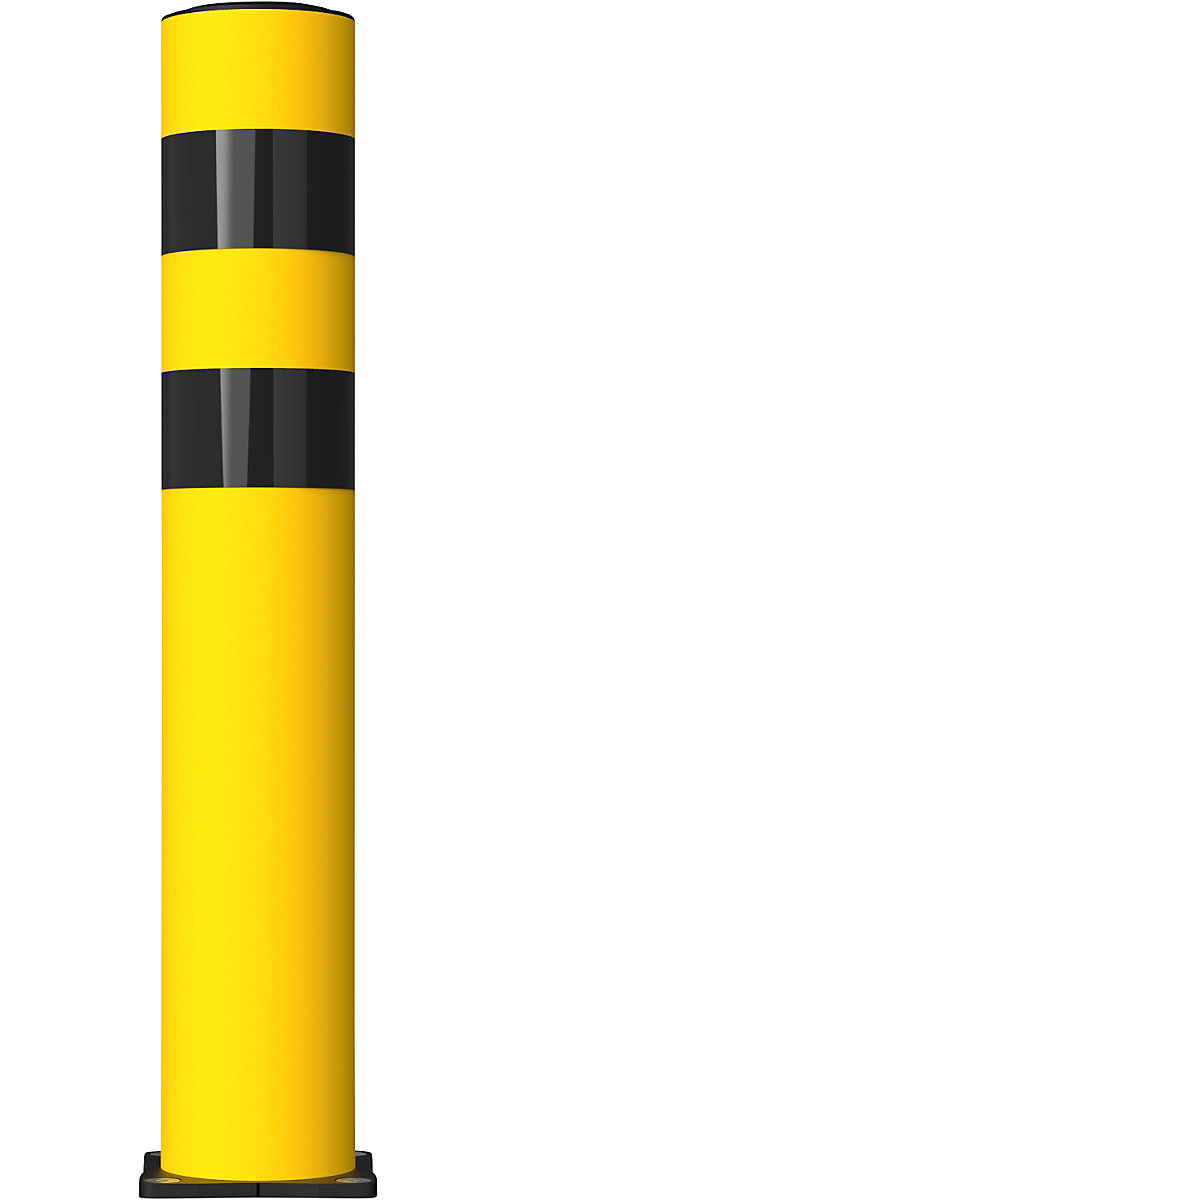 FLEX IMPACT Rammschutzpoller, Ø 125 mm, Höhe 750 mm, gelb, 2 Reflexionsstreifen, verzinkte Bodenplatte